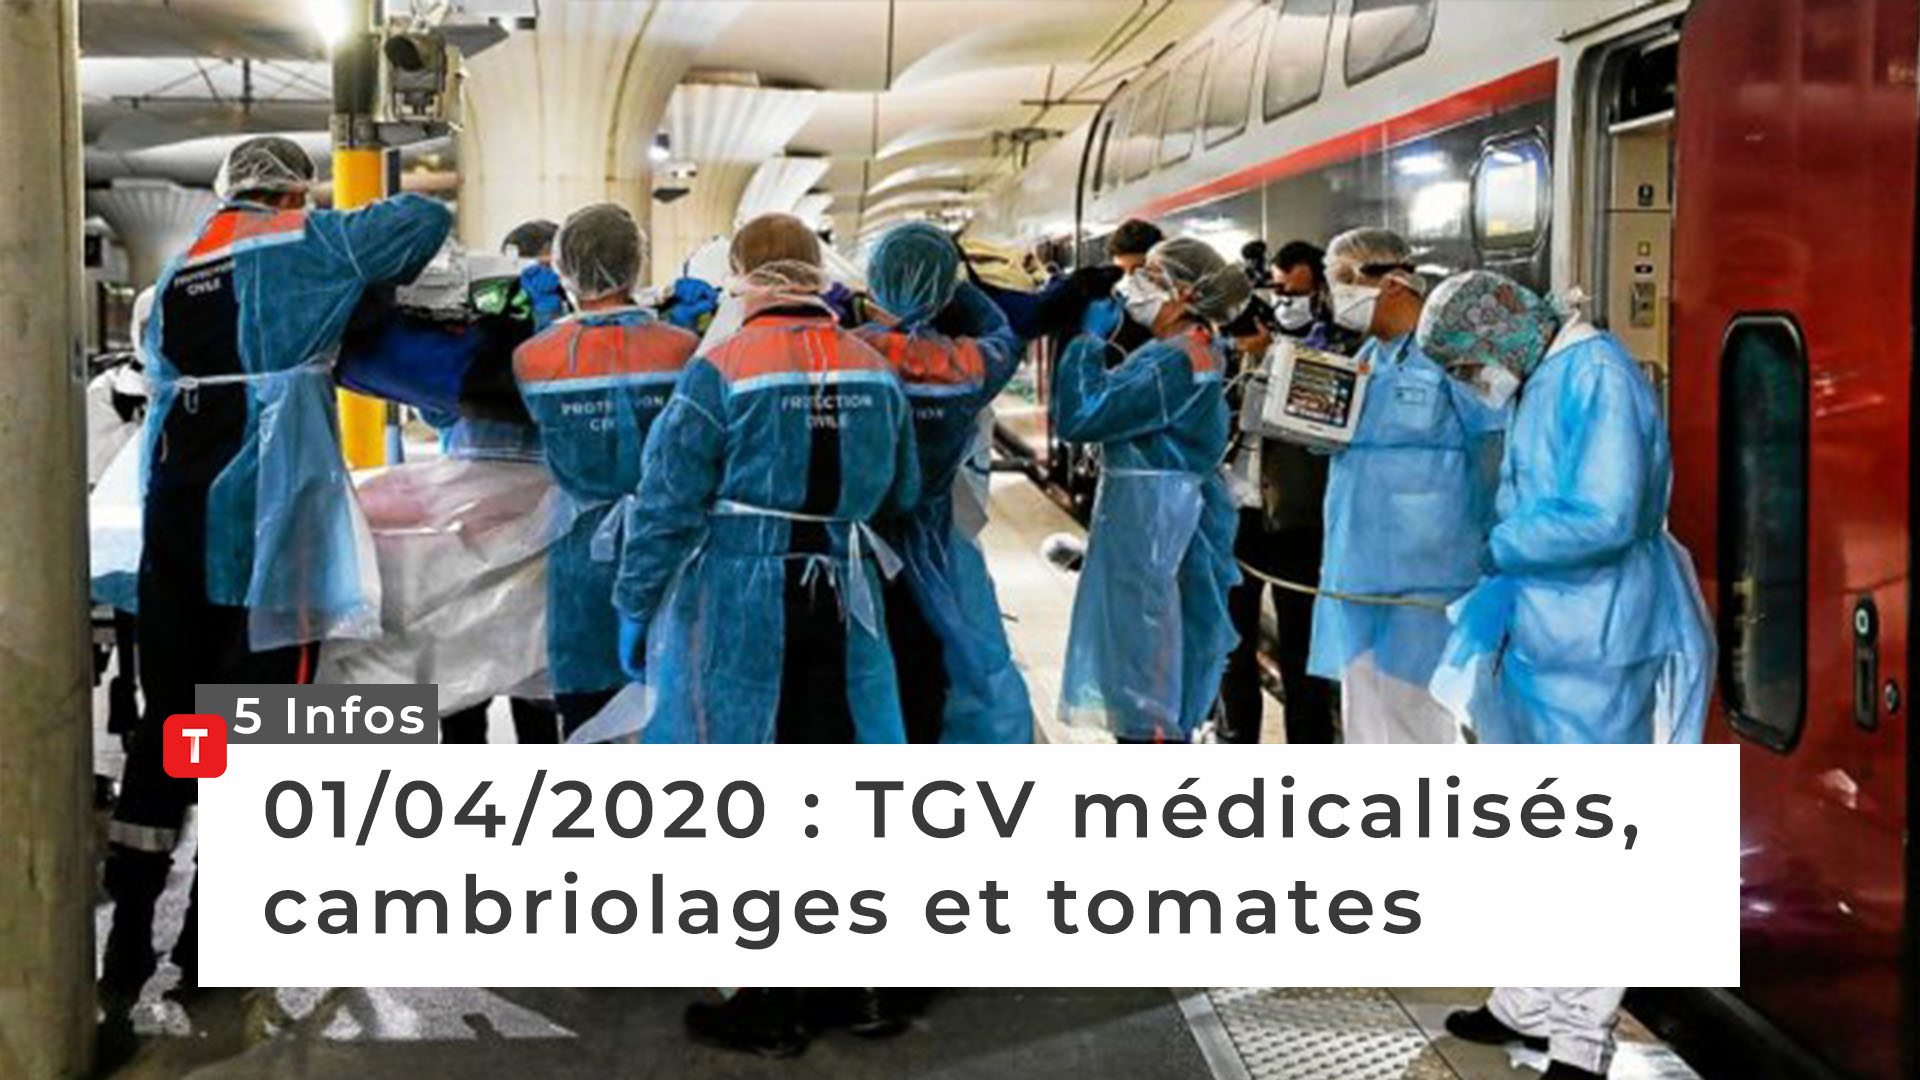 TGV médicalisés, cambriolages et tomates … Cinq infos bretonnes du 1er avril (Le Télégramme)